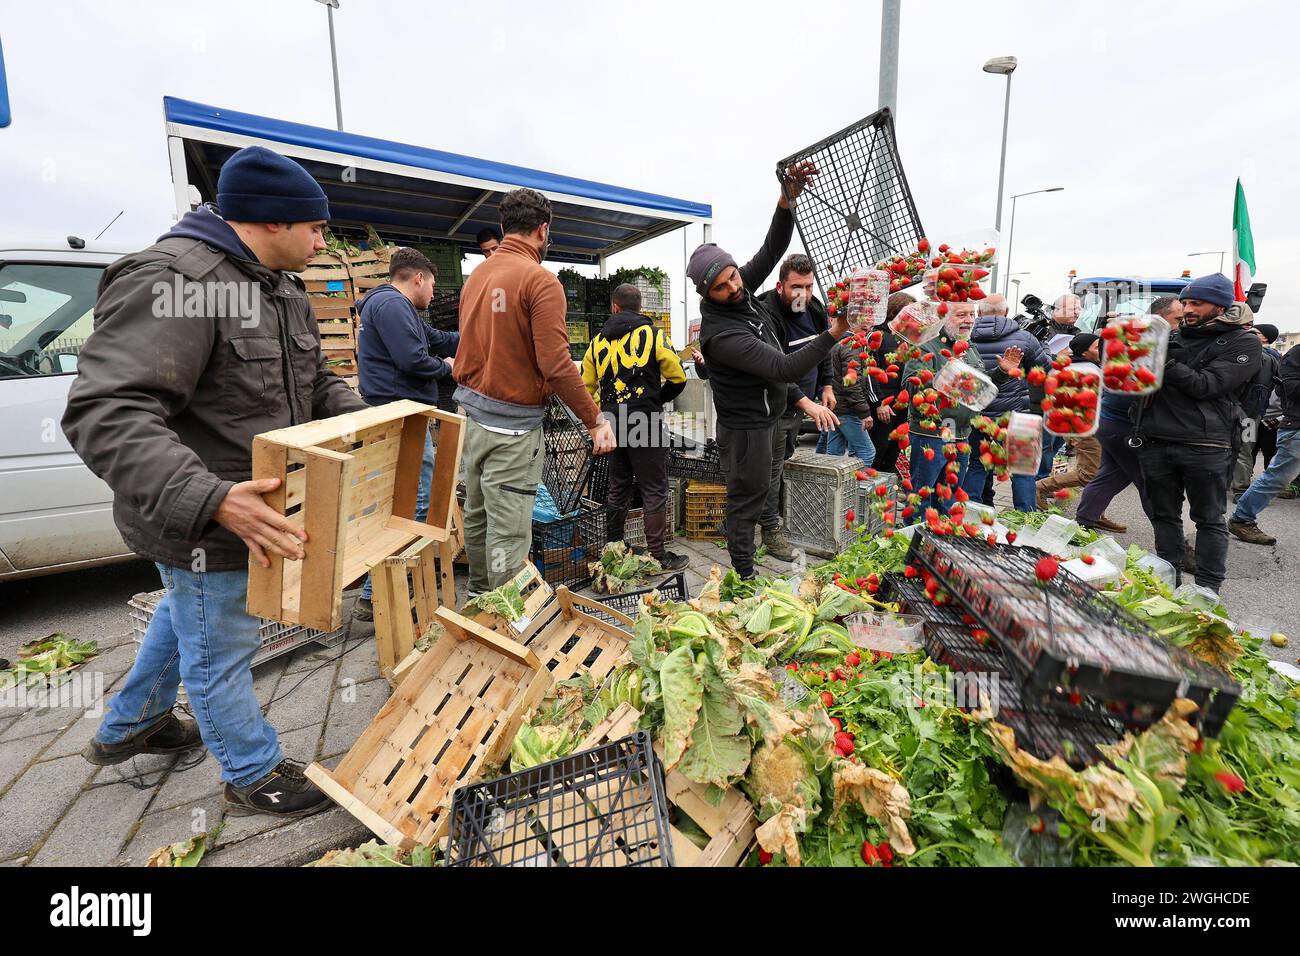 Die Landwirte werfen ihre Erzeugnisse, Obst und Gemüse während der Demonstration aus Protest gegen die von der EU genehmigten "Grünen Deal"-Initiativen weg Stockfoto